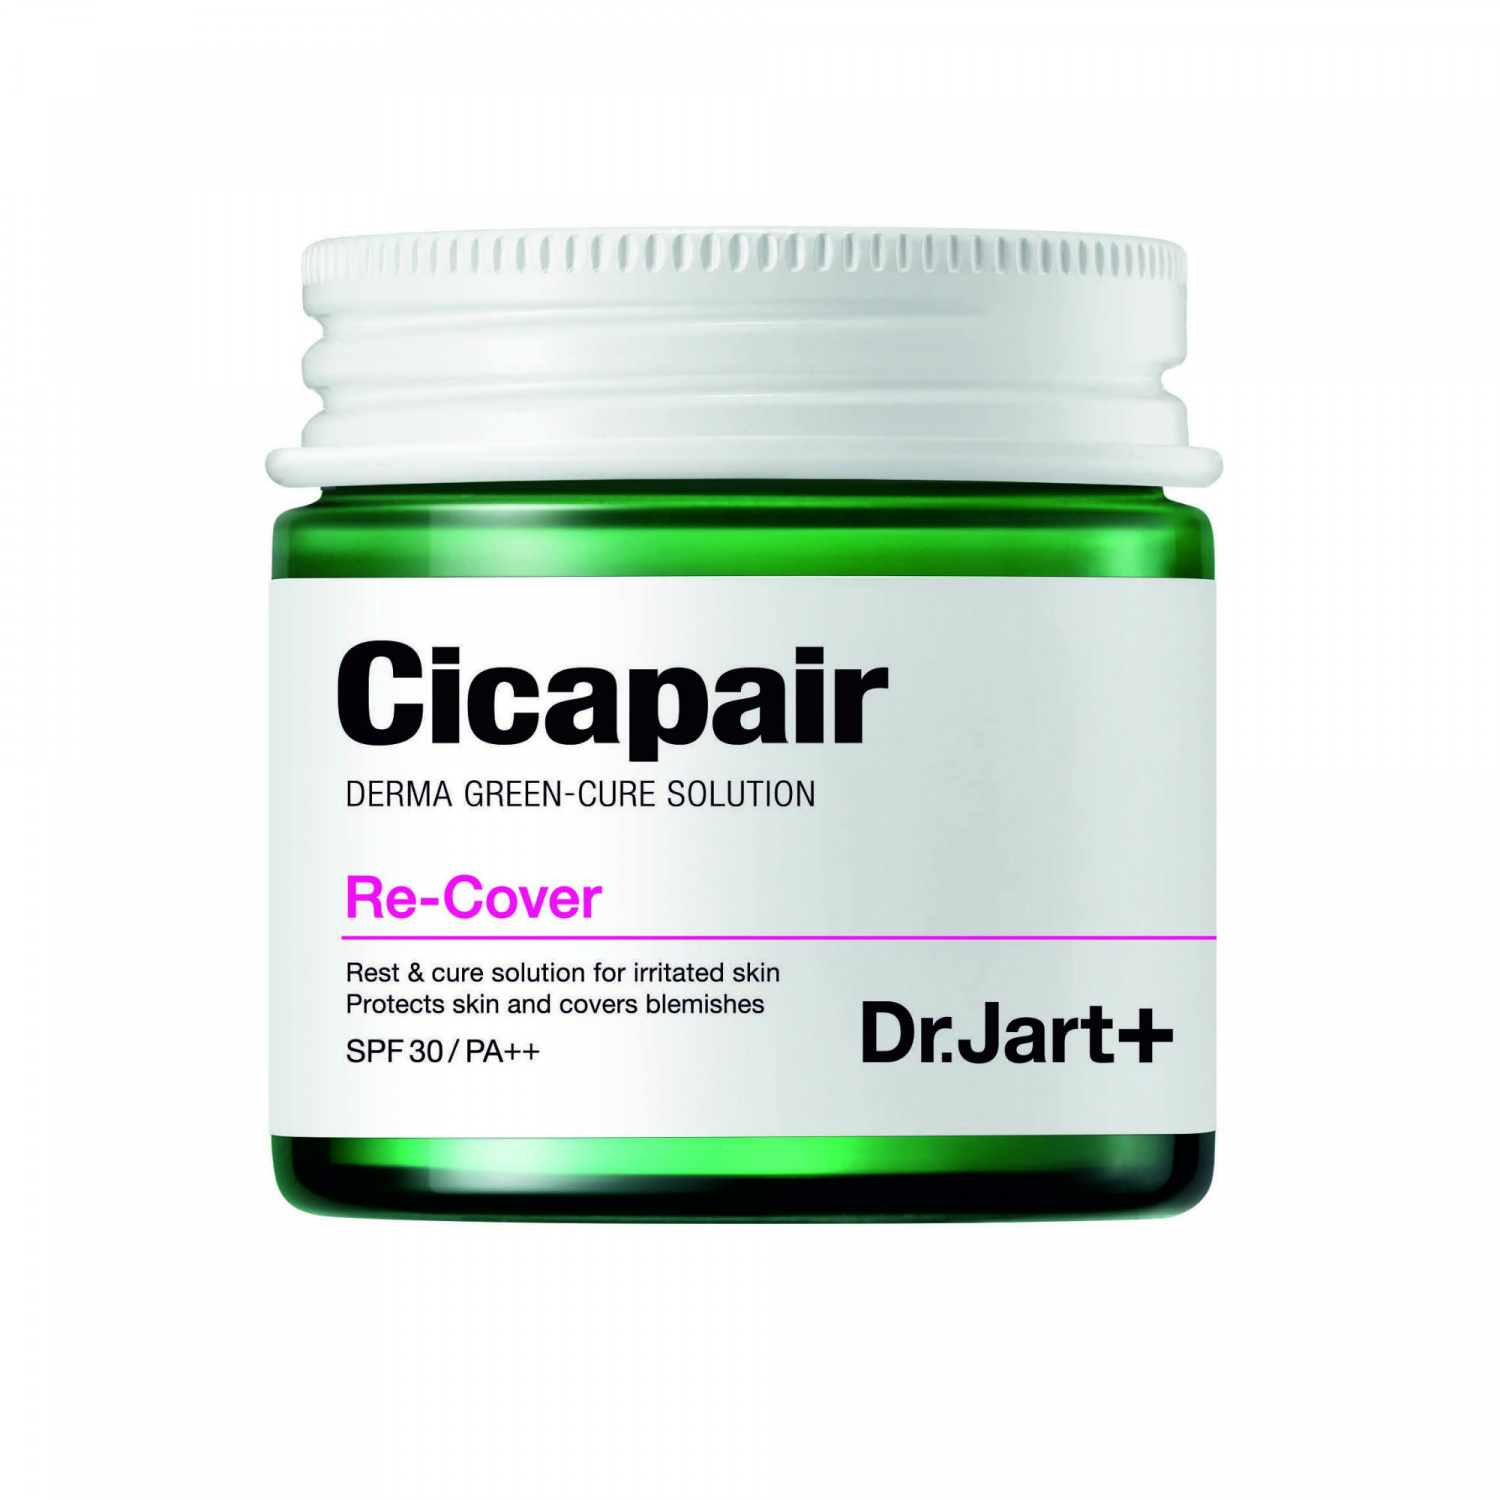 Dr.Jart+ Cicapair Re-Cover 50ml - интернет-магазин профессиональной косметики Spadream, изображение 25602